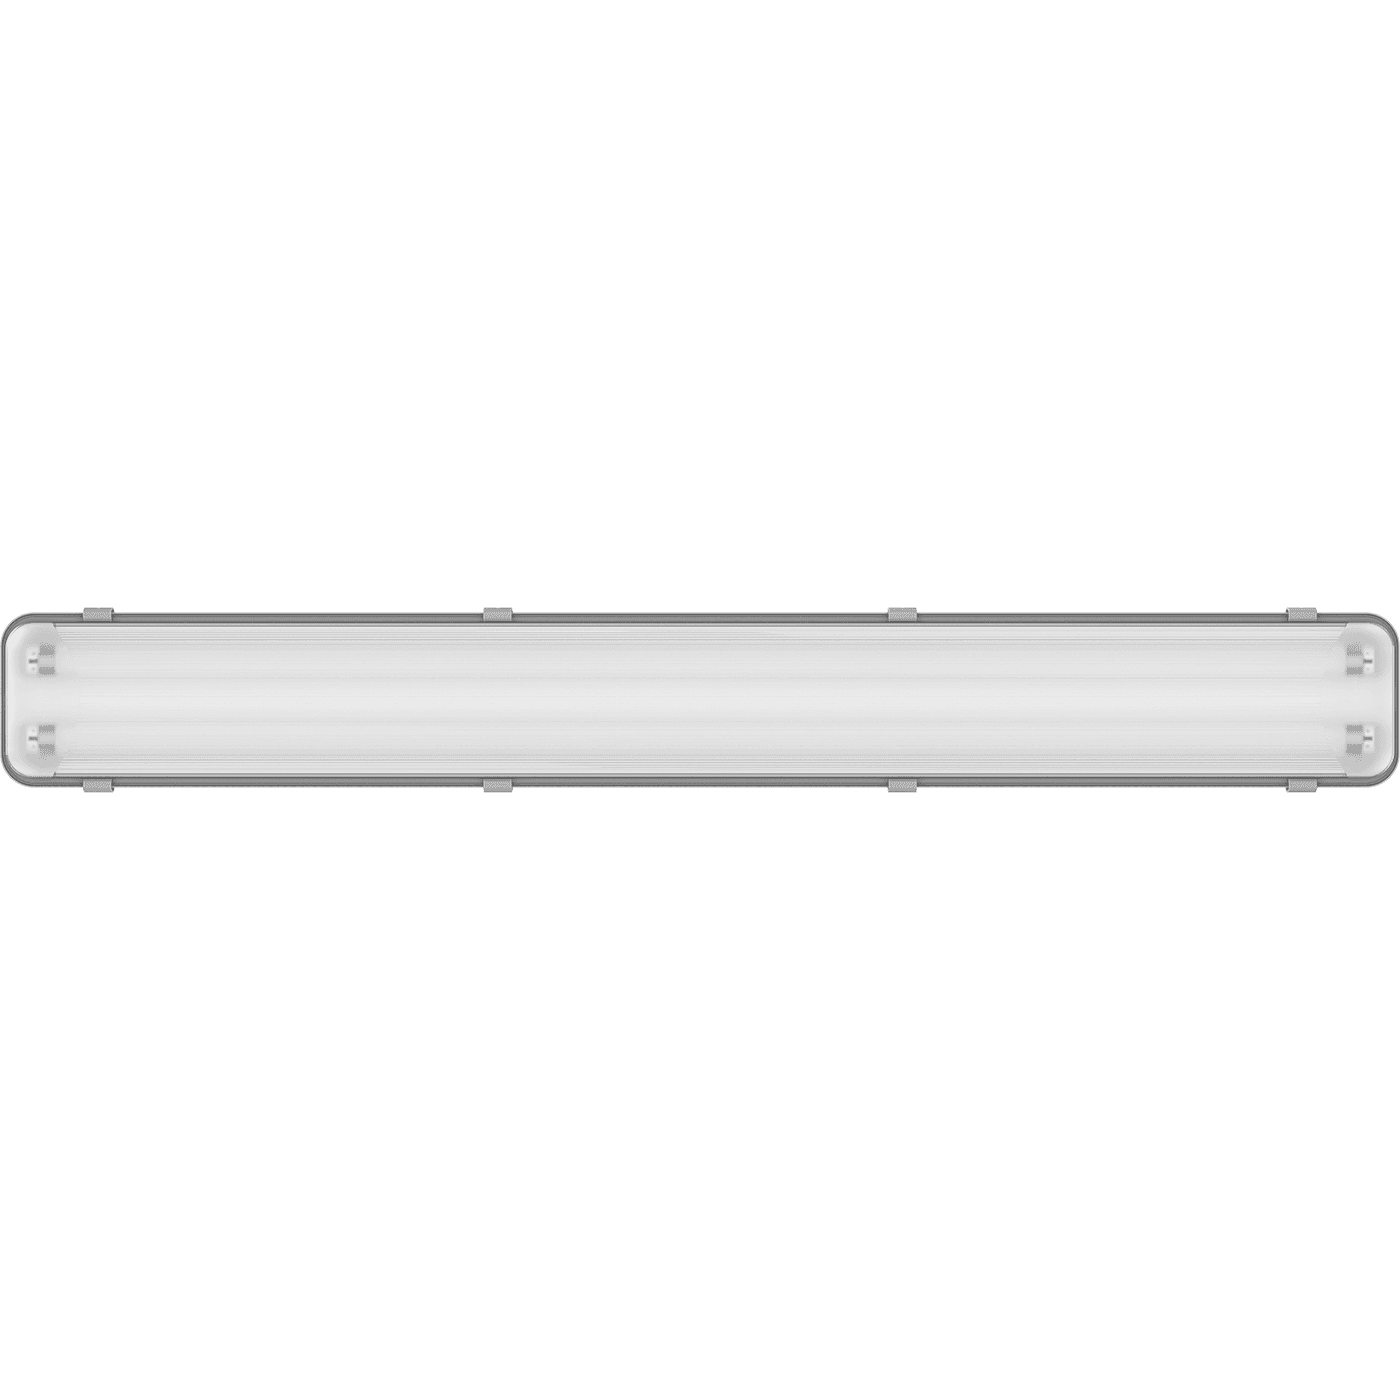 ламповые ARCTIC 228 (PC/SMC) HF ES1, артикул 1069000360